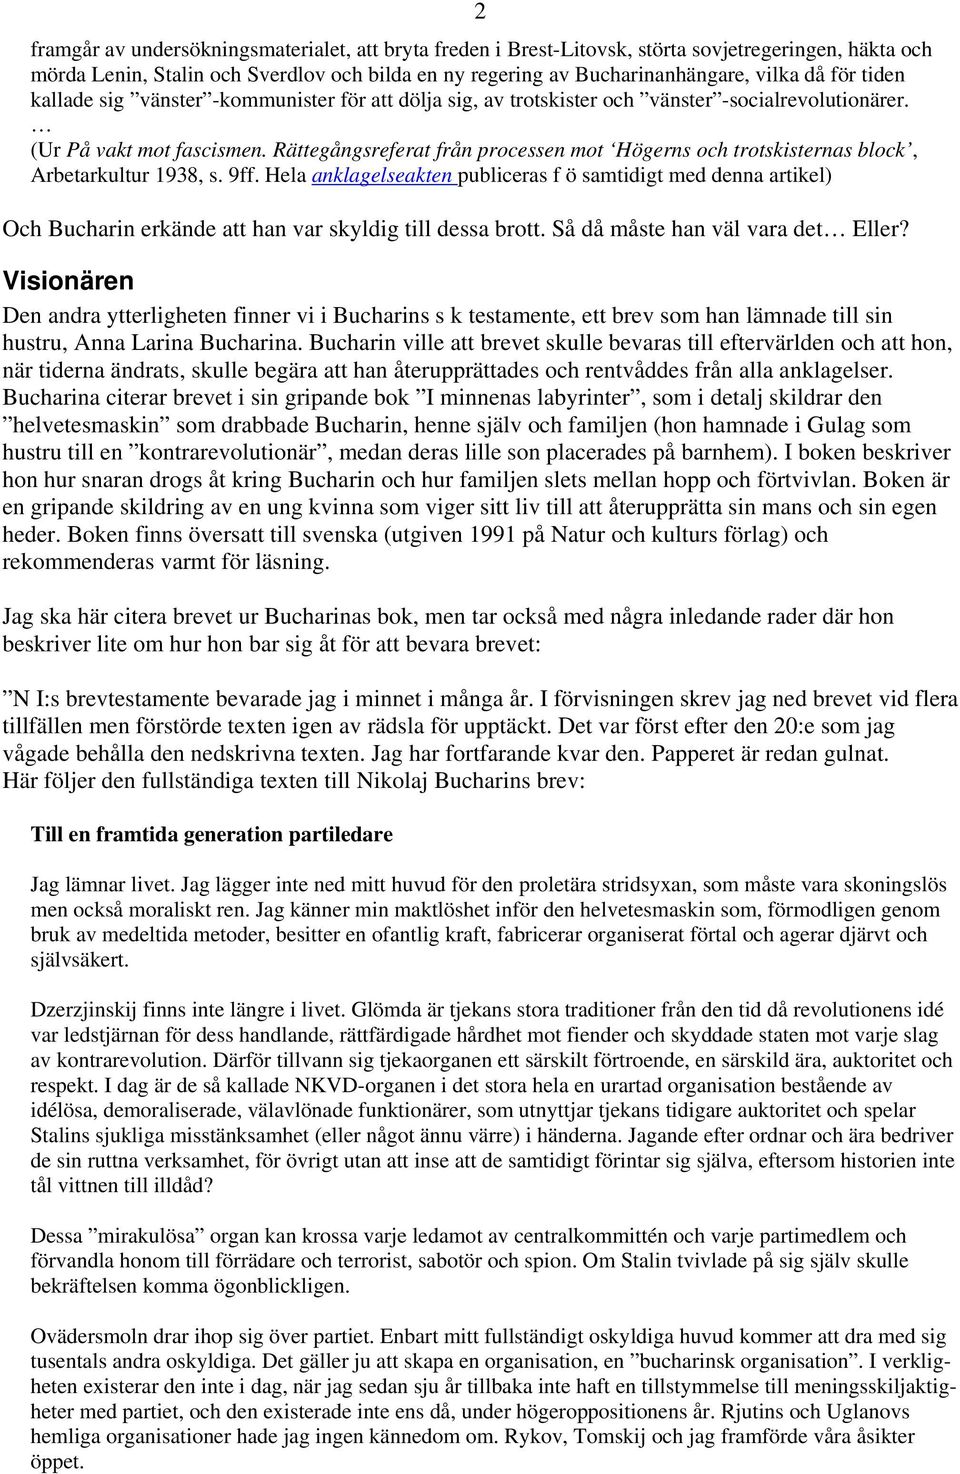 Rättegångsreferat från processen mot Högerns och trotskisternas block, Arbetarkultur 1938, s. 9ff.